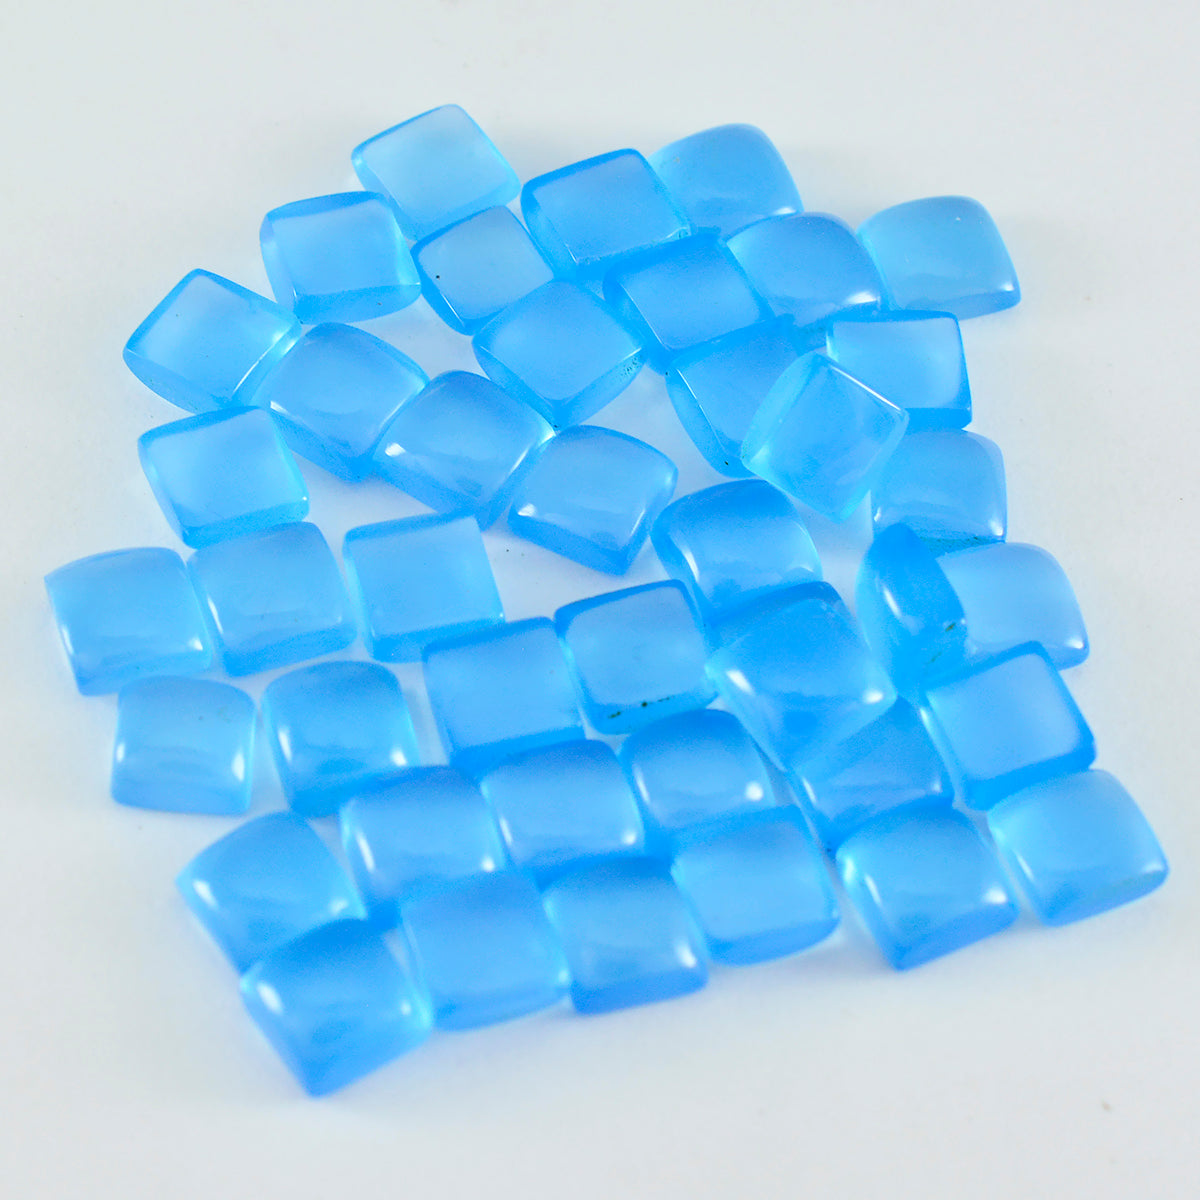 Riyogems 1 Stück blauer Chalcedon-Cabochon, 5 x 5 mm, quadratische Form, gut aussehender, hochwertiger loser Edelstein